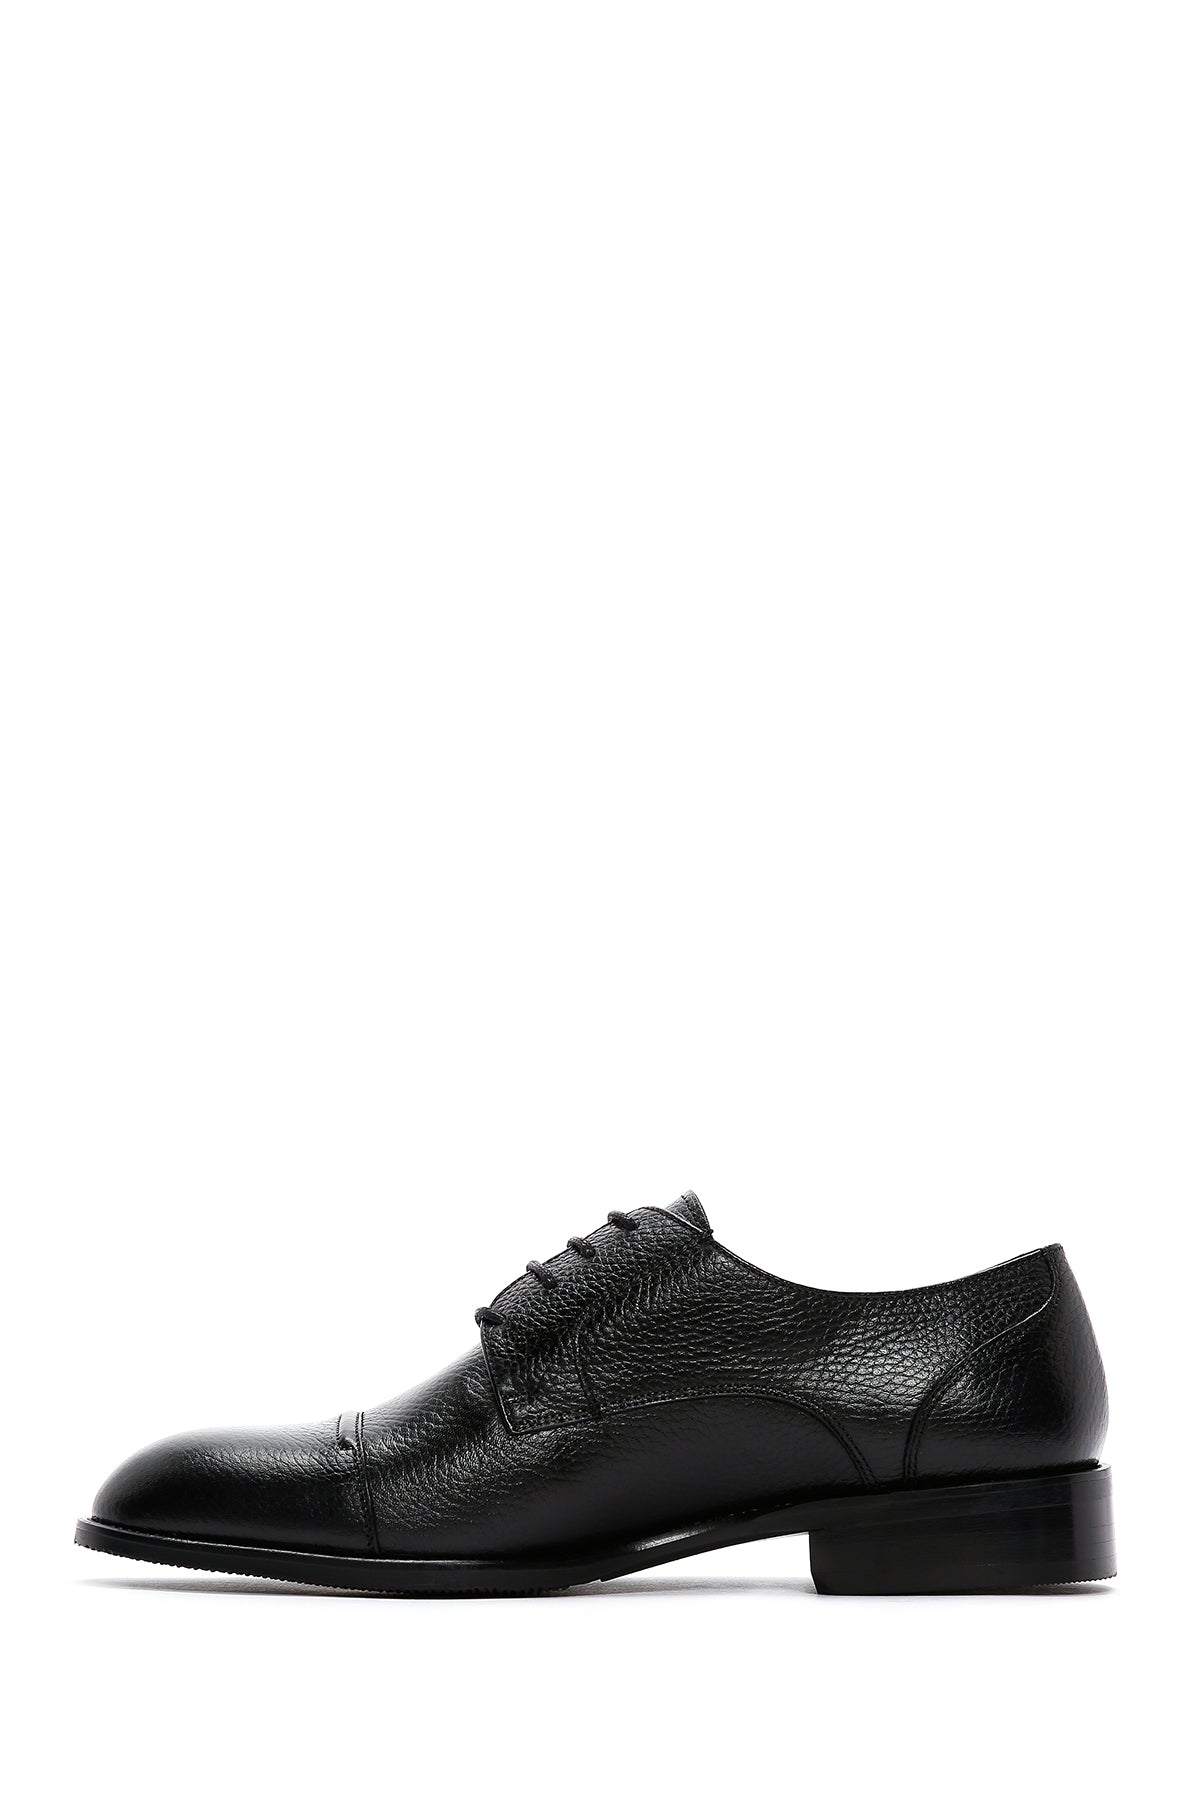 Erkek Siyah Deri Klasik Ayakkabı